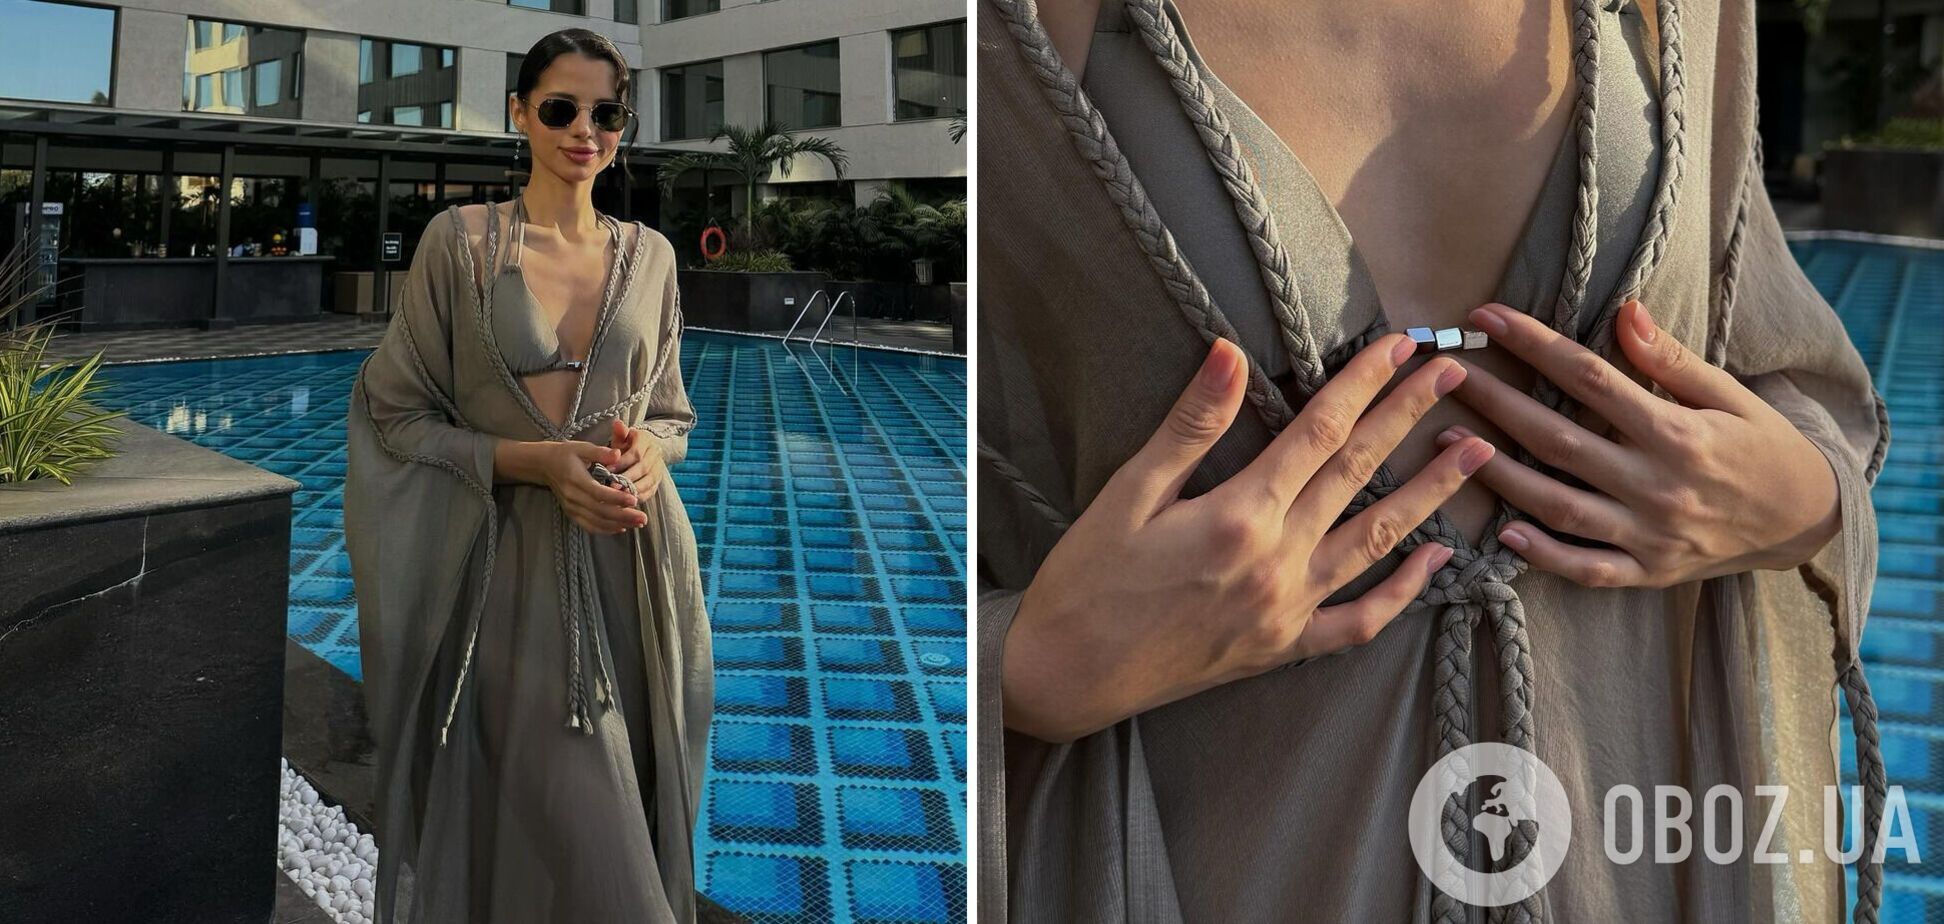 'Мисс Украина' София Шамия показала фото в купальнике и засветила супермодный маникюр